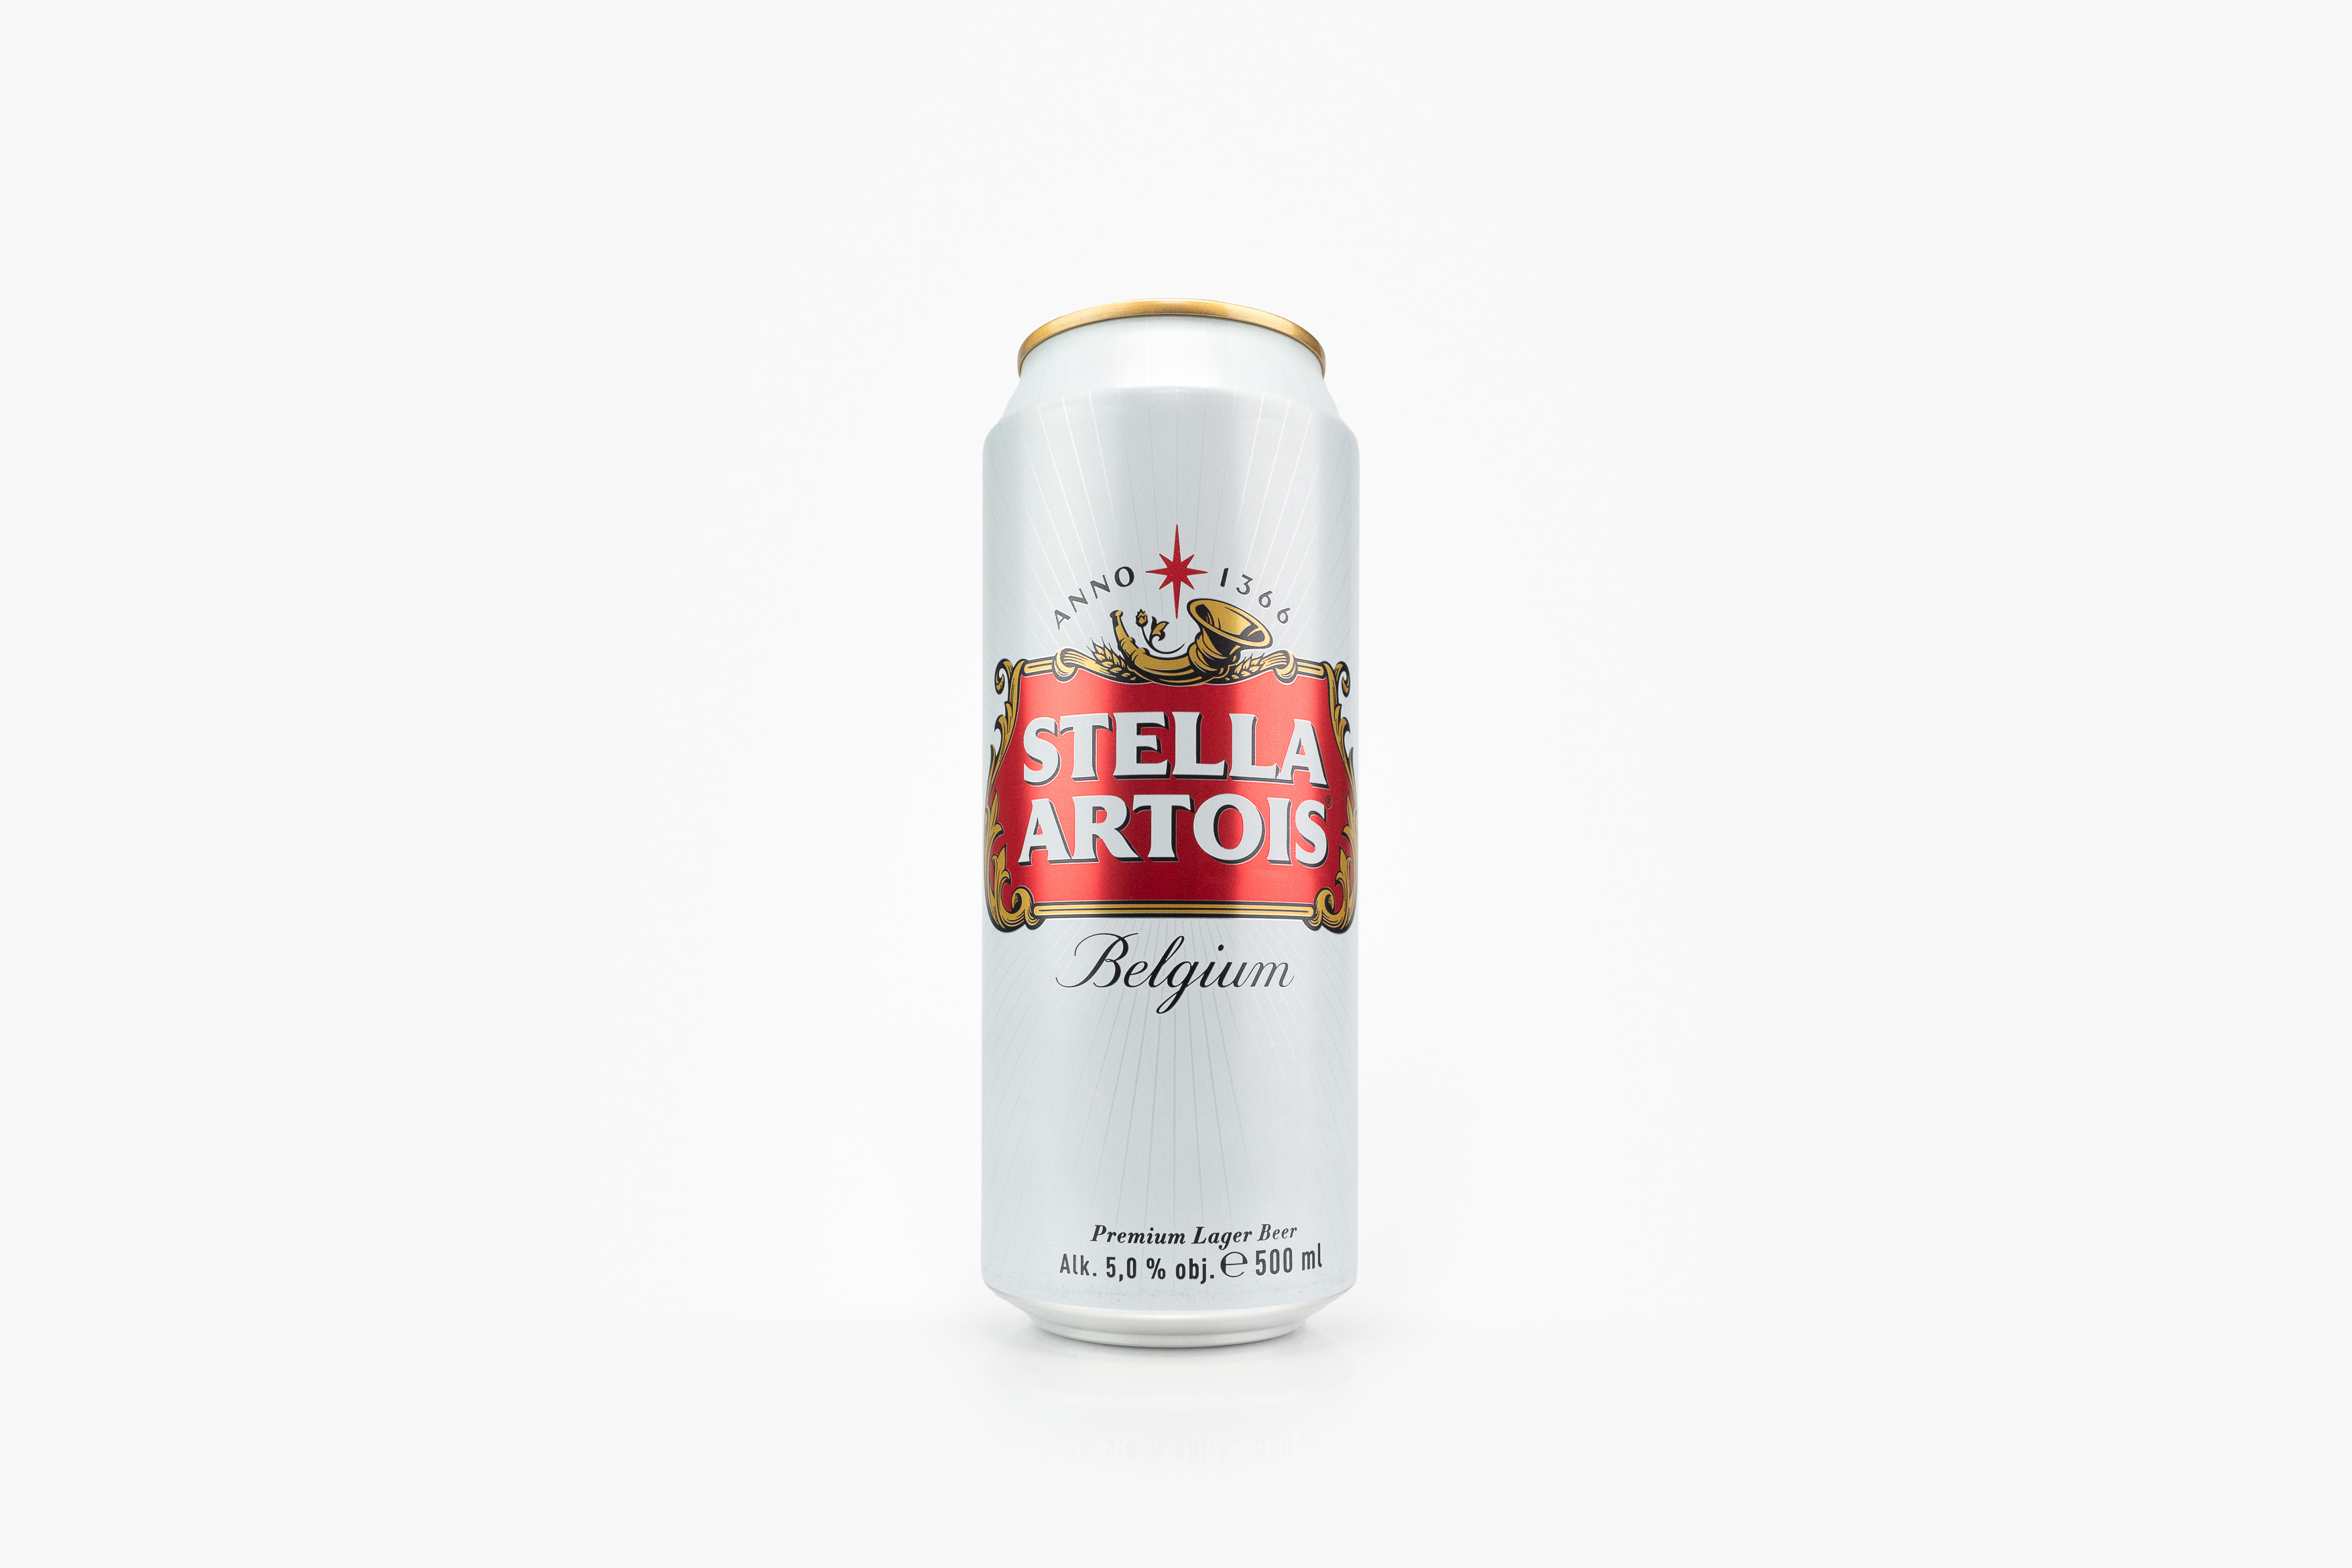 Ukázková produktová fotografie obalů/plechovek piva značky Stella Artois.